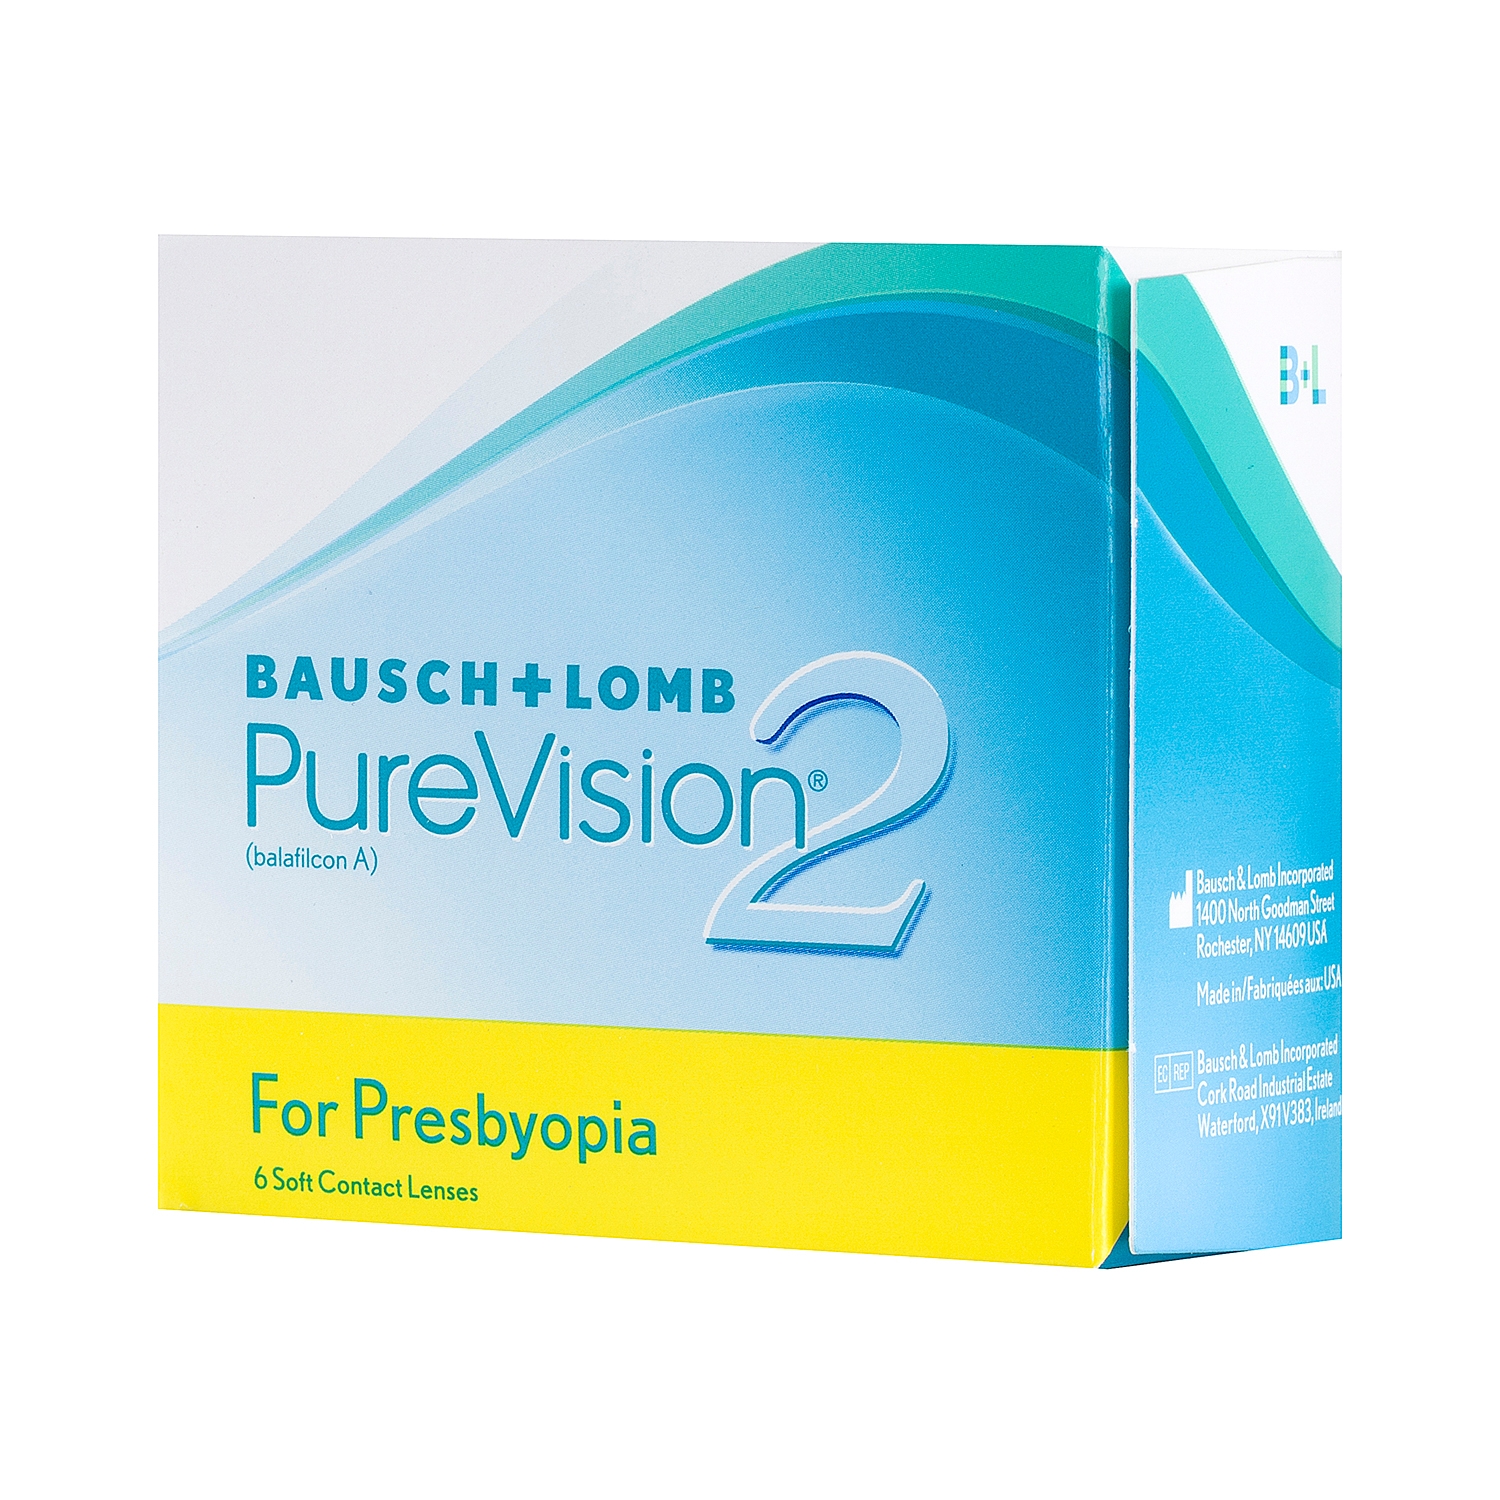 Purevision 2 for Presbyopia